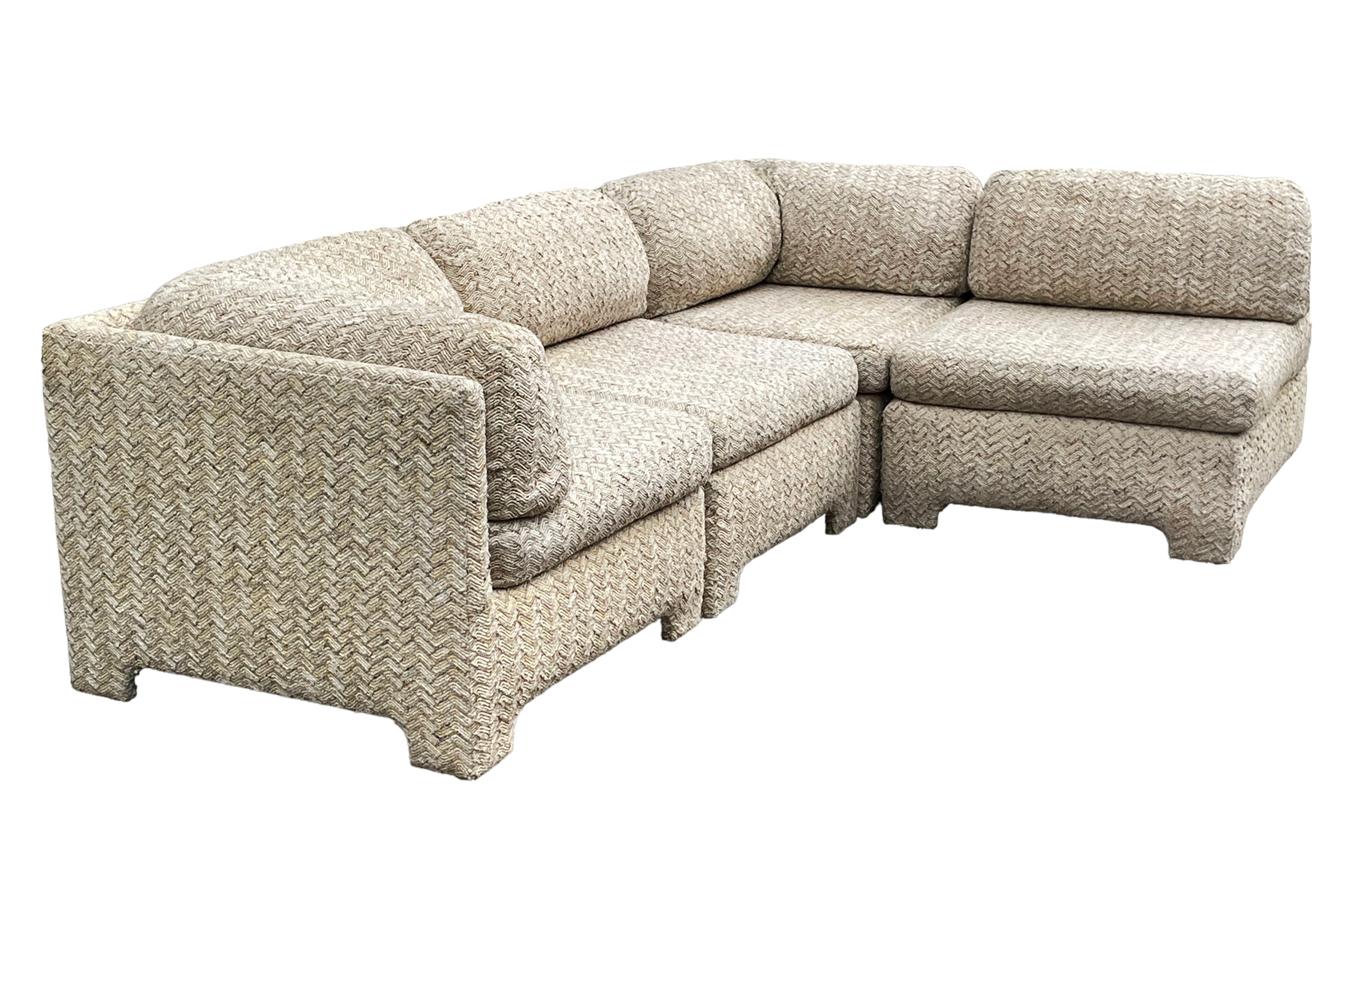 Ein fünfteiliges modulares Vintage-Sofa, das renovierungsbedürftig ist. Designlinien für Tage. Einzelne Messungen unten. 

Einzelner Stuhl B33 T35.5
Eckstück B 34 T35,5